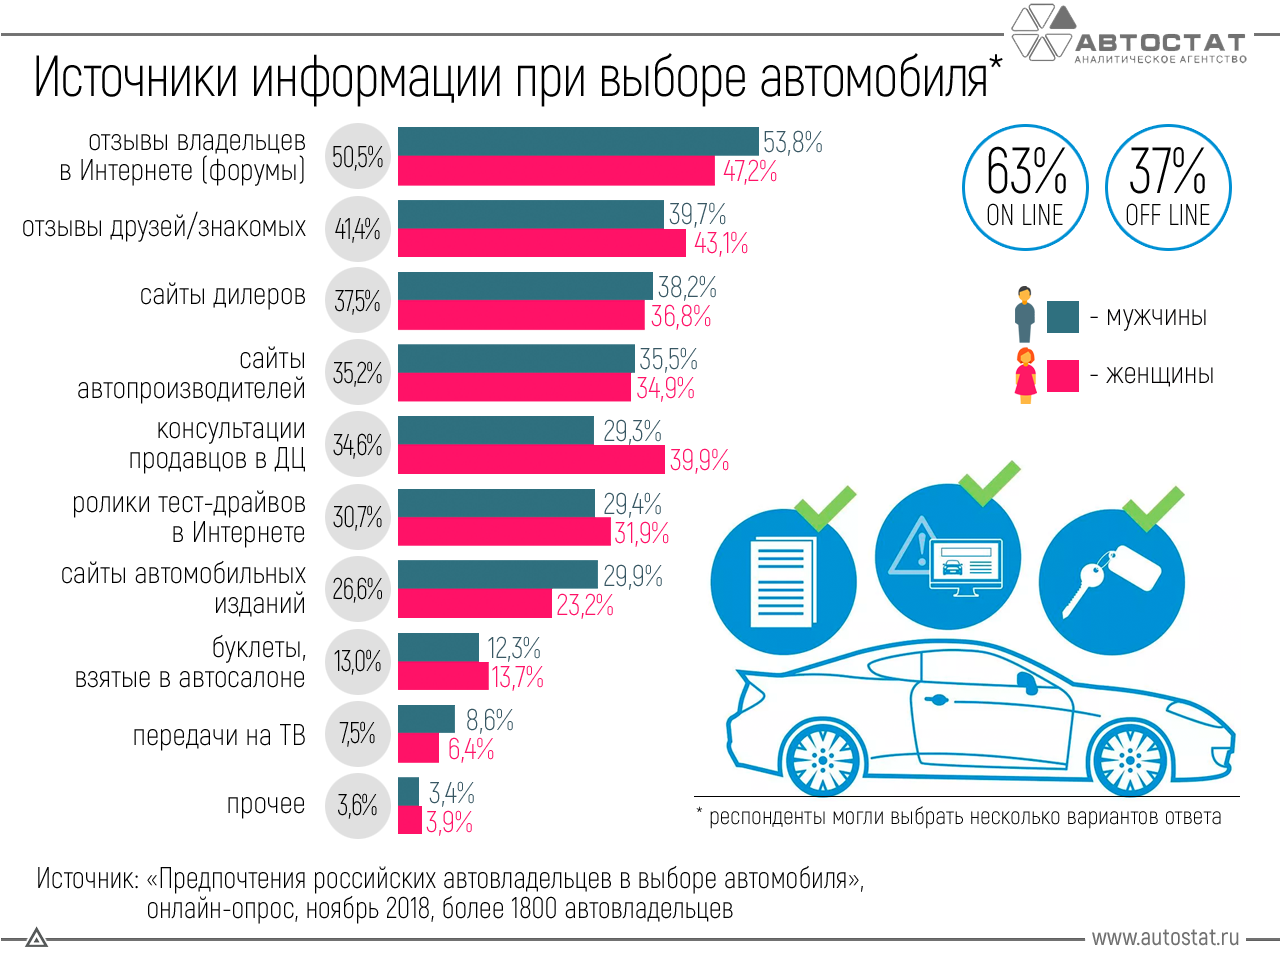 Автомобильные организации россии. Критерии выбора автомобиля. Авто статистика. Критерии выбора нового автомобиля. Популярные производители автомобилей.